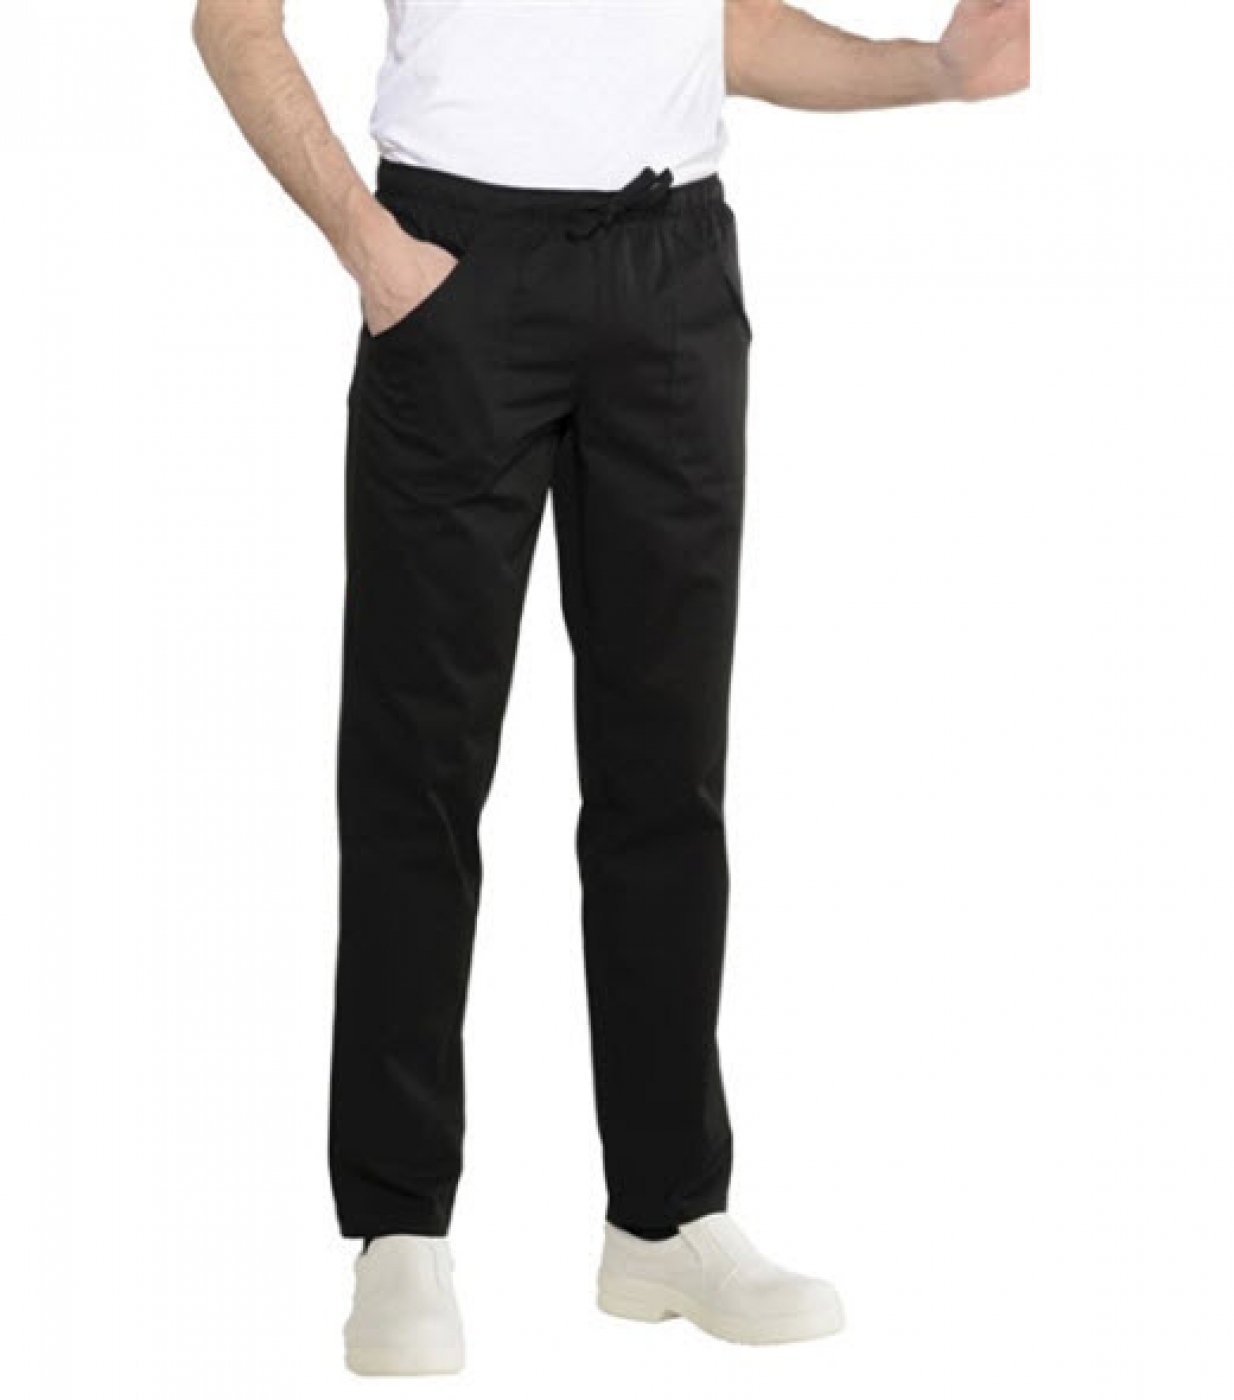 Pantalon bucatar cu buzunare aplicate, model conic de barbat